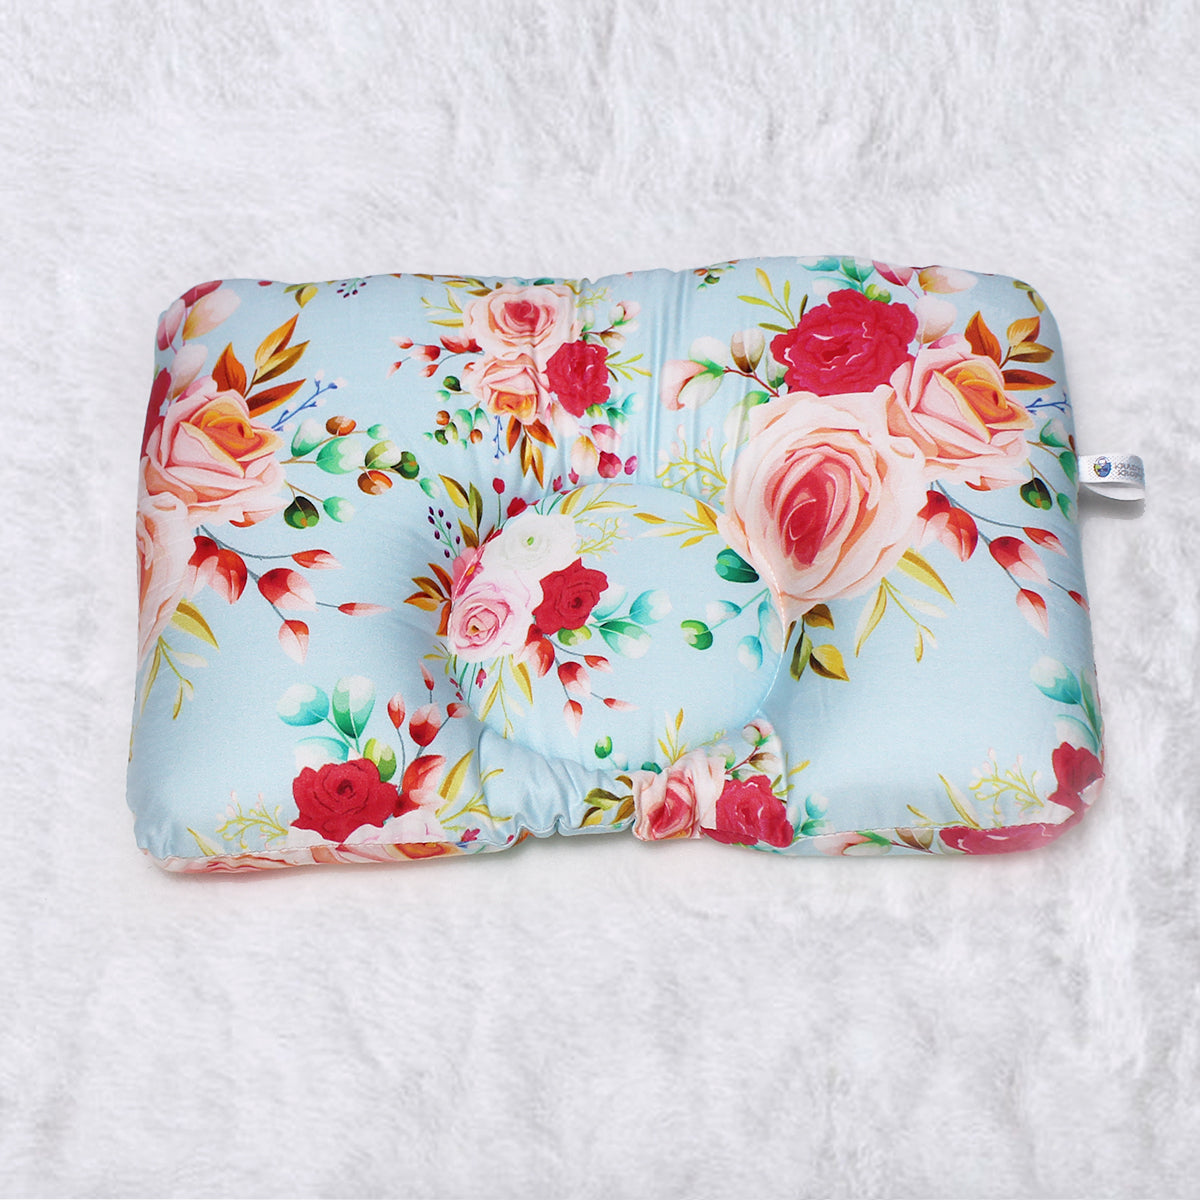 Floral Garden New Born Pillow | Baby Pillow | Head Shaping Pillow